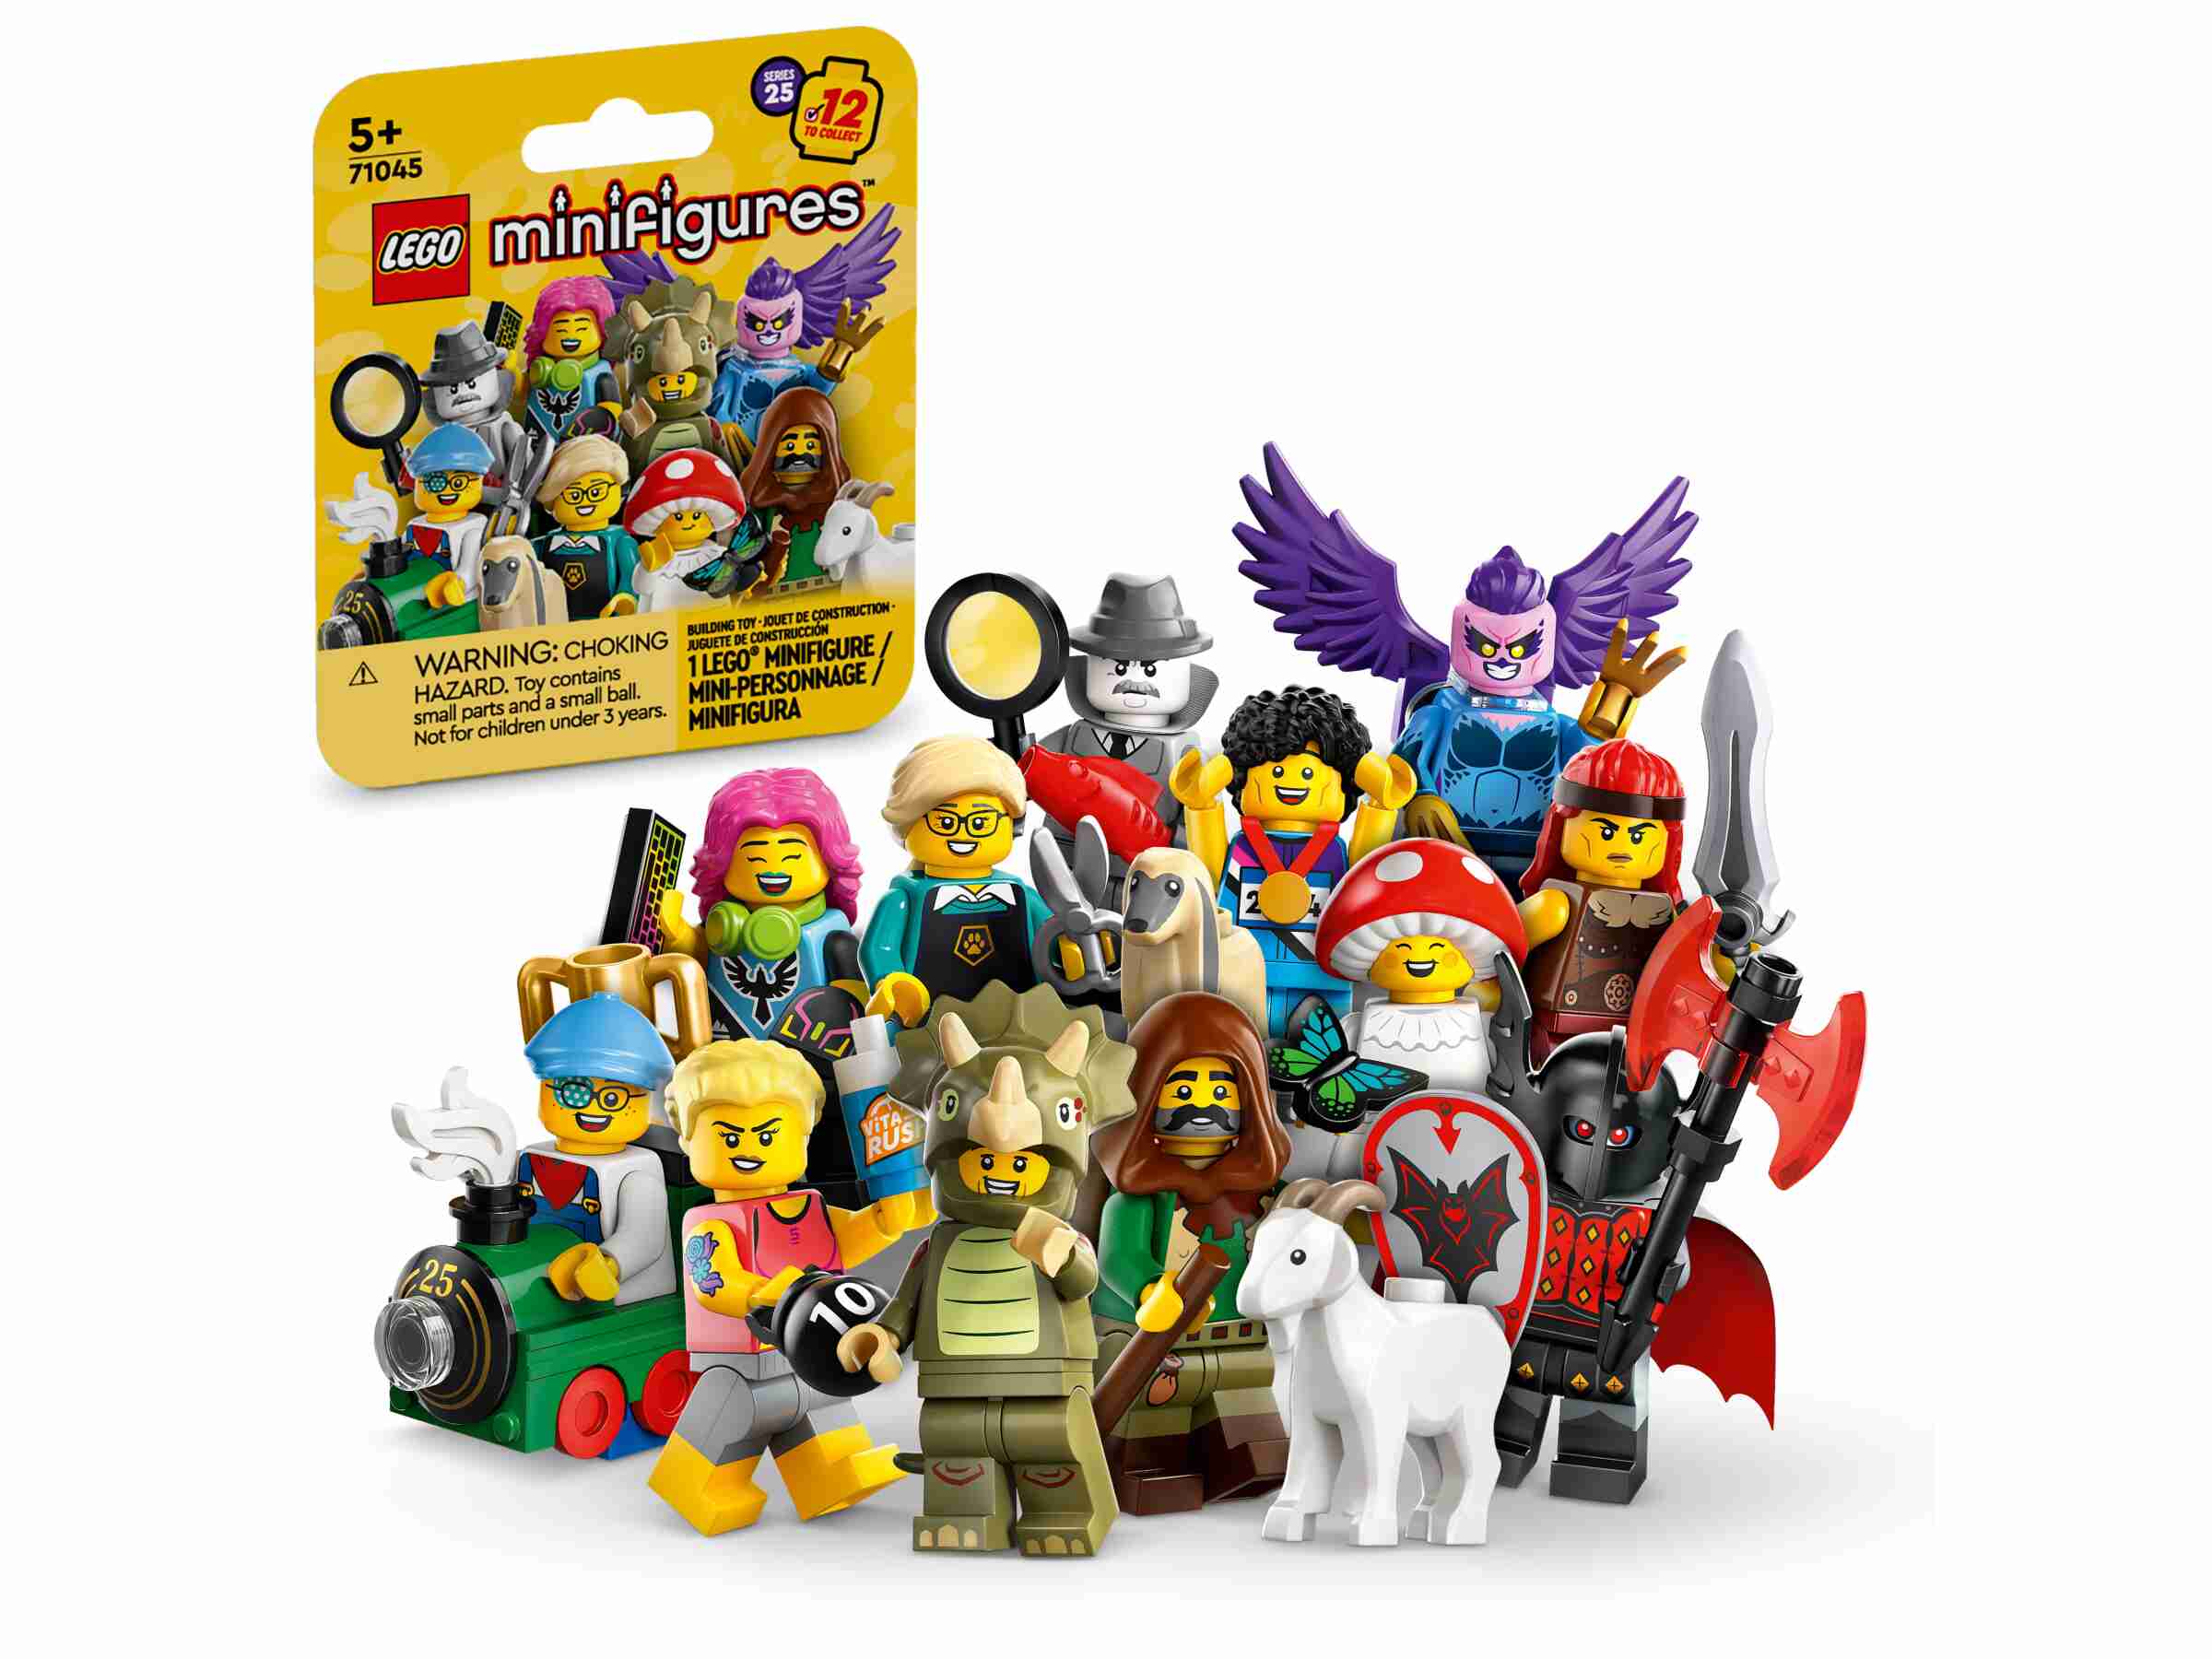 Sortie officielle des tourtereaux de la Saint-Valentin LEGO